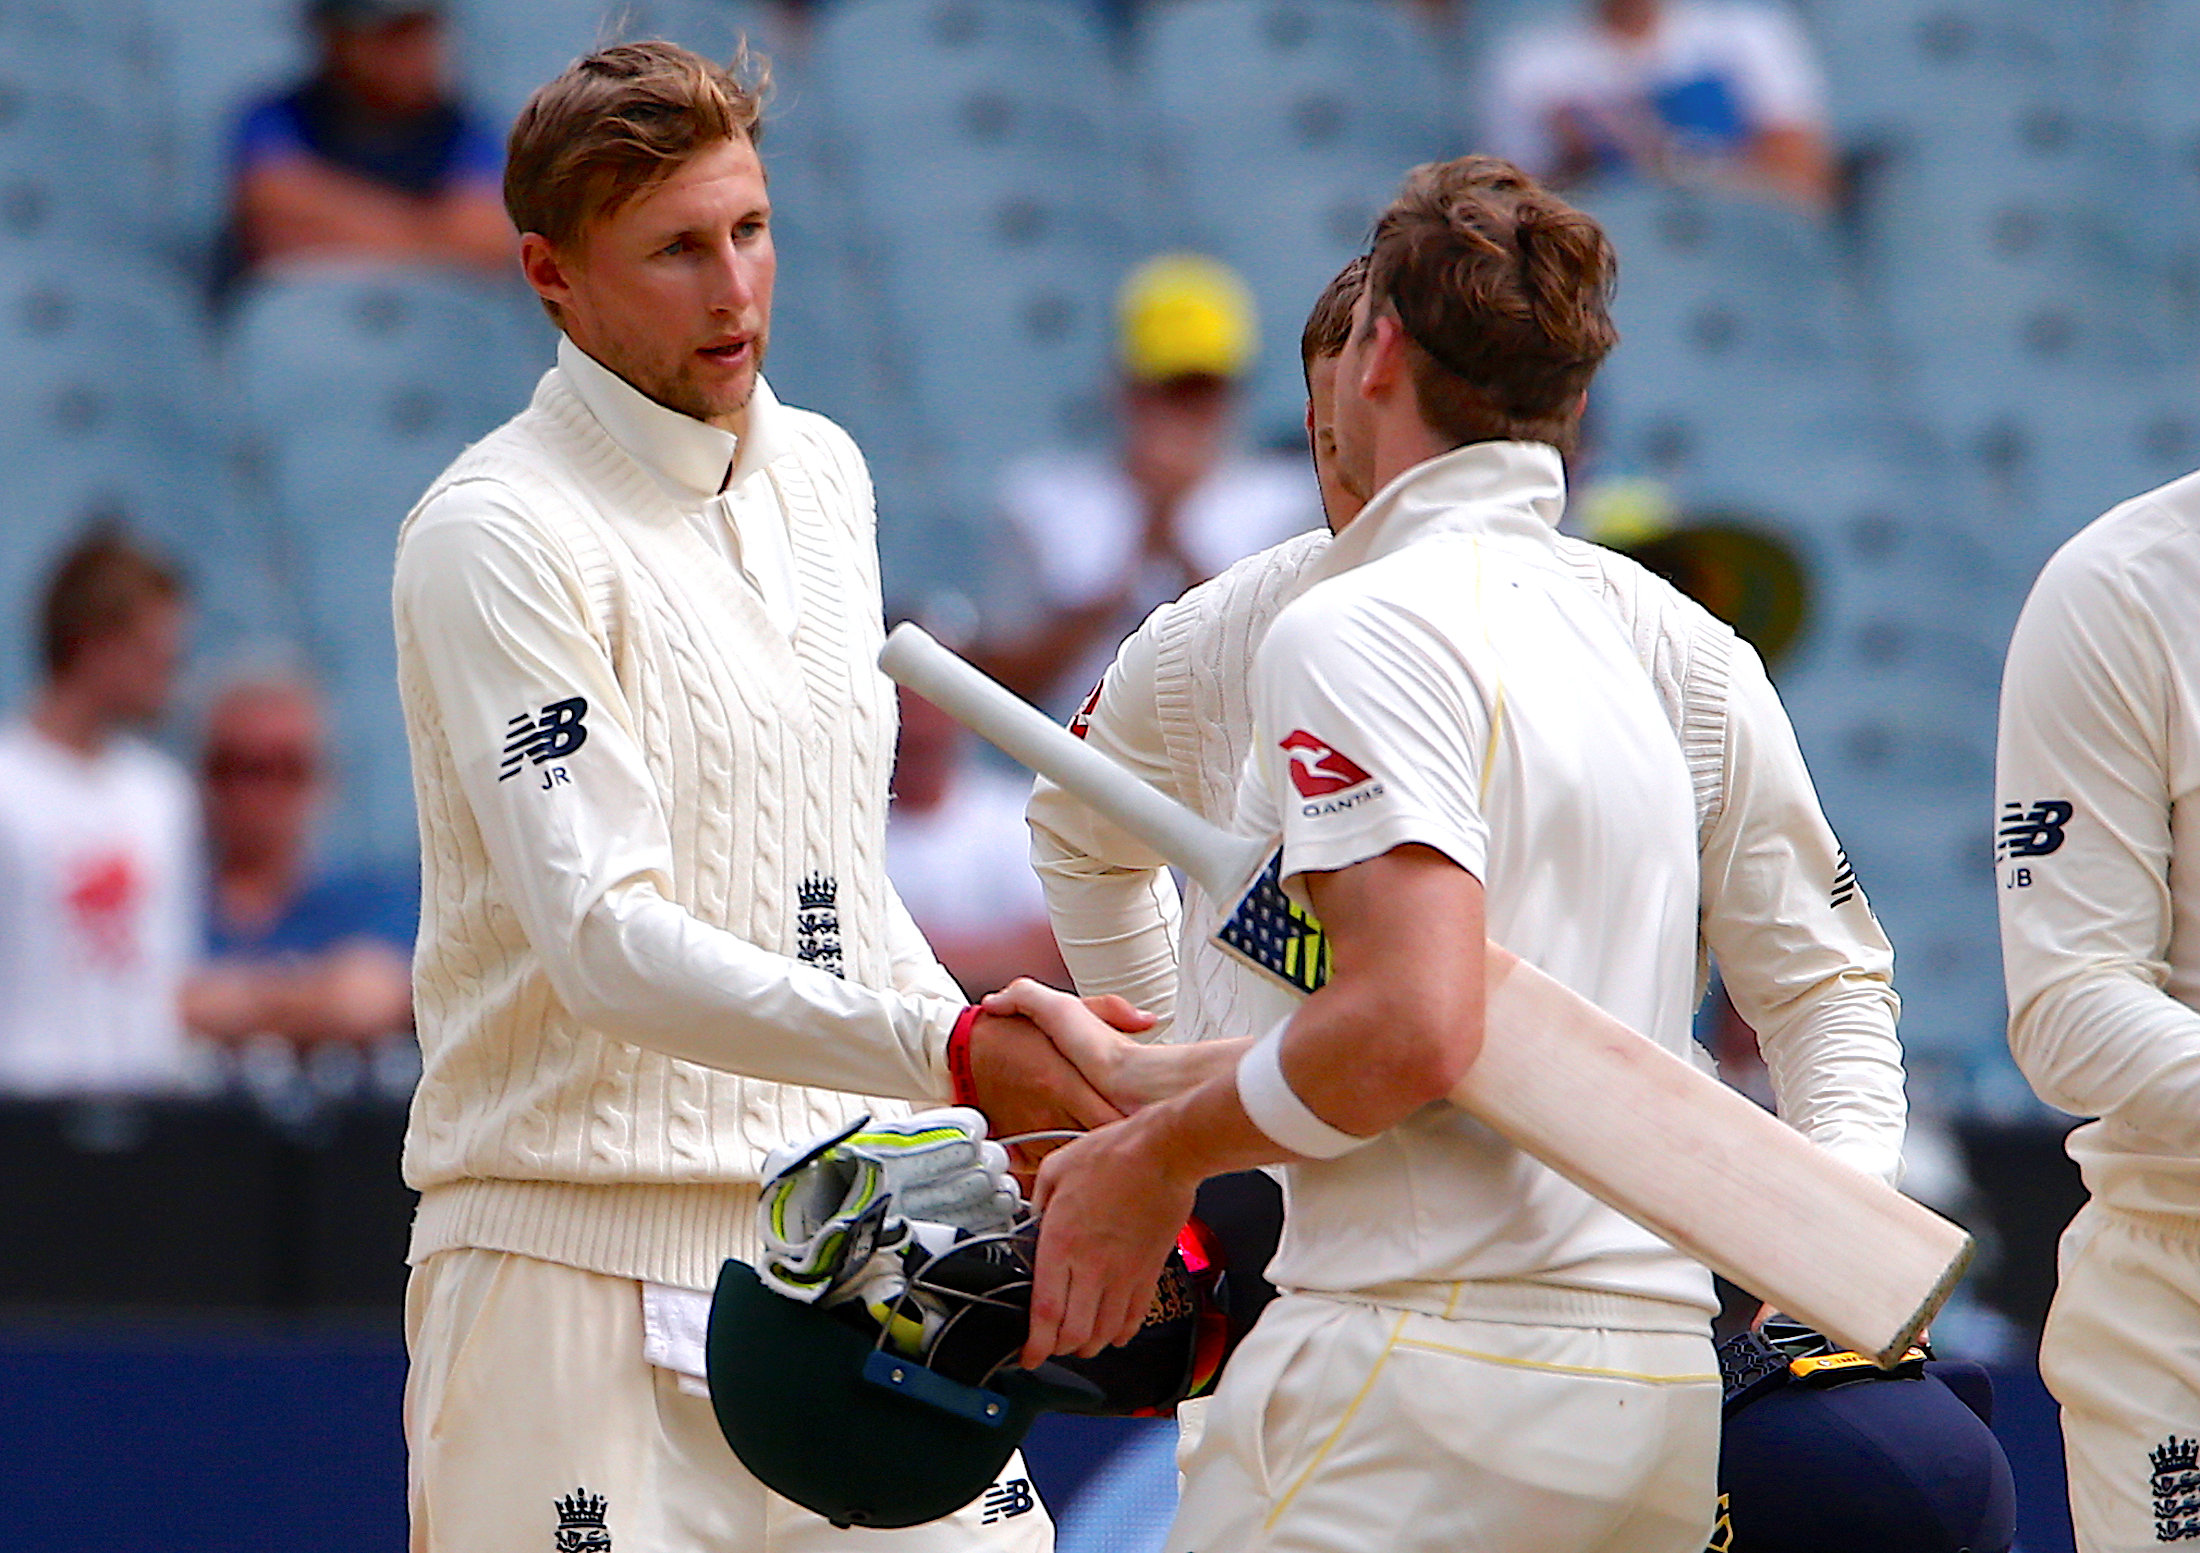 Smith ton denies England face-saving Ashes win